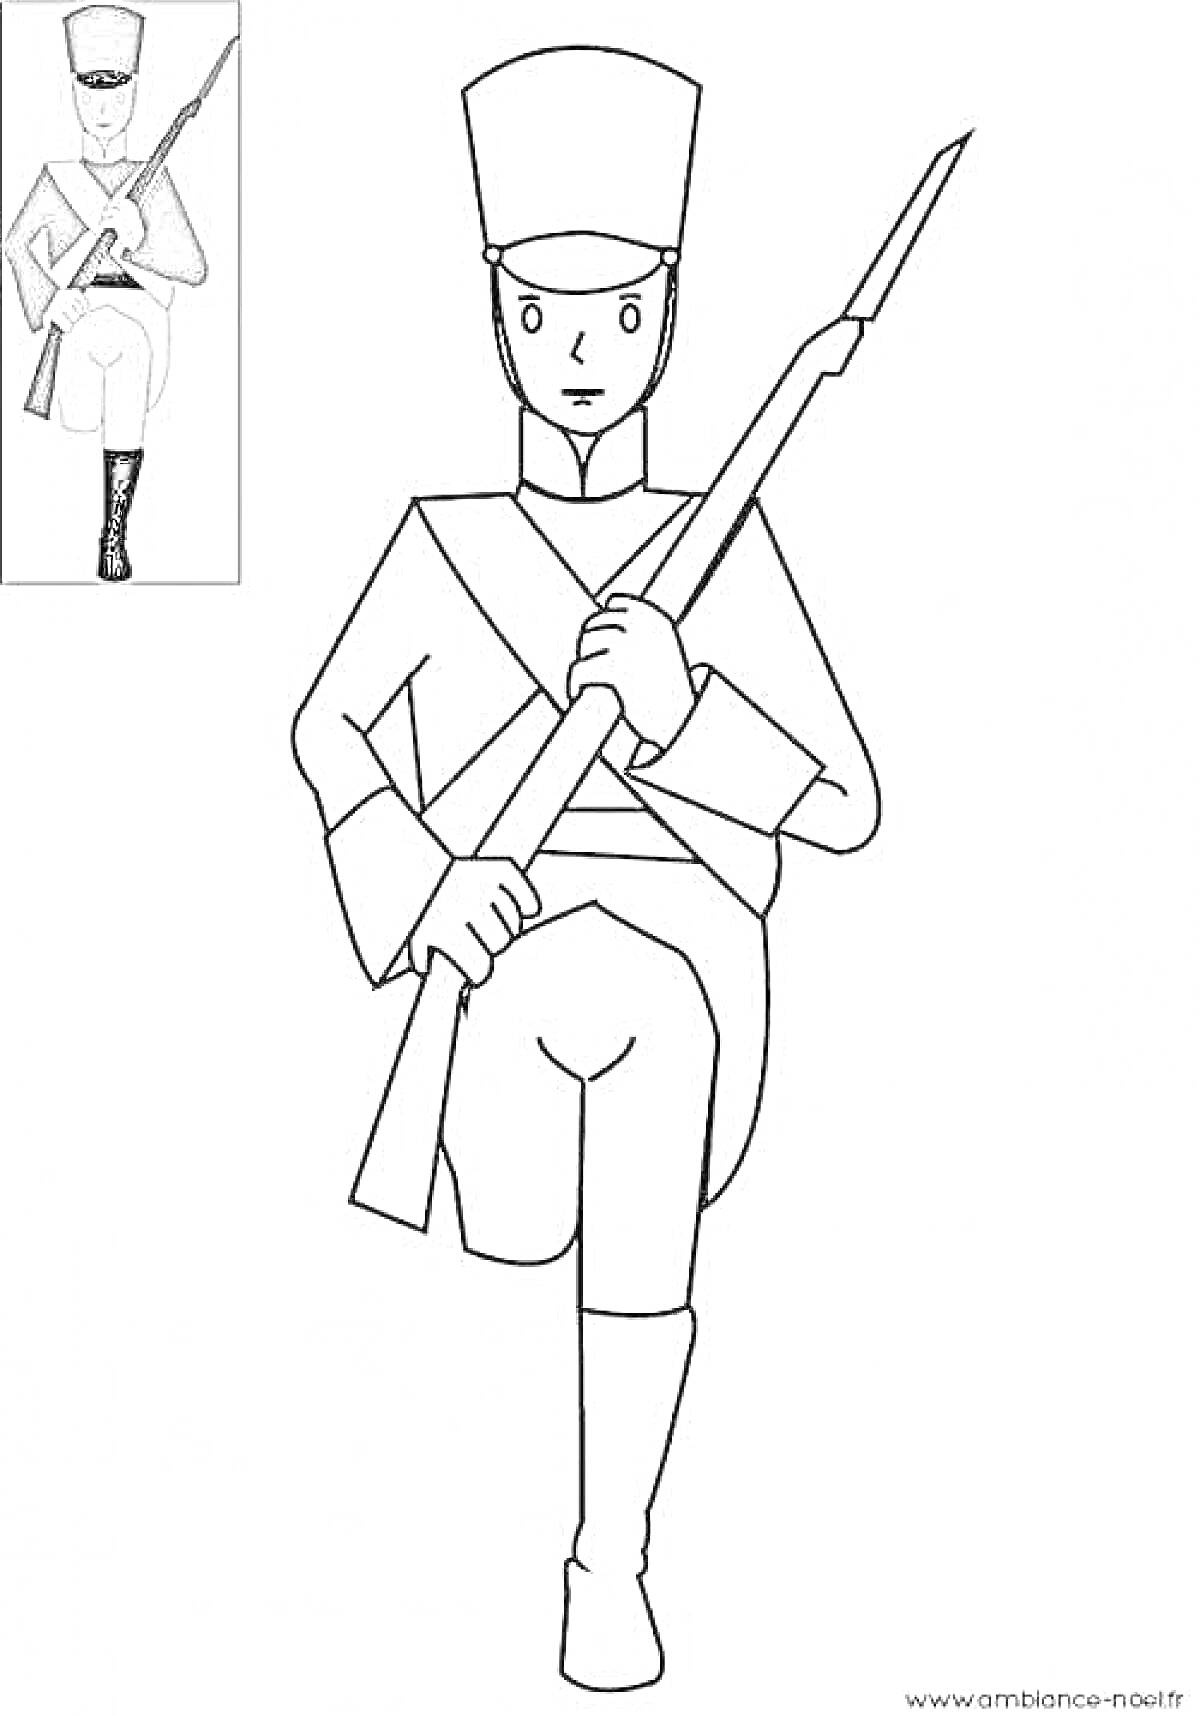 Раскраска Солдатик в форме с ружьем на плече, марширующий, под картинкой цветной пример